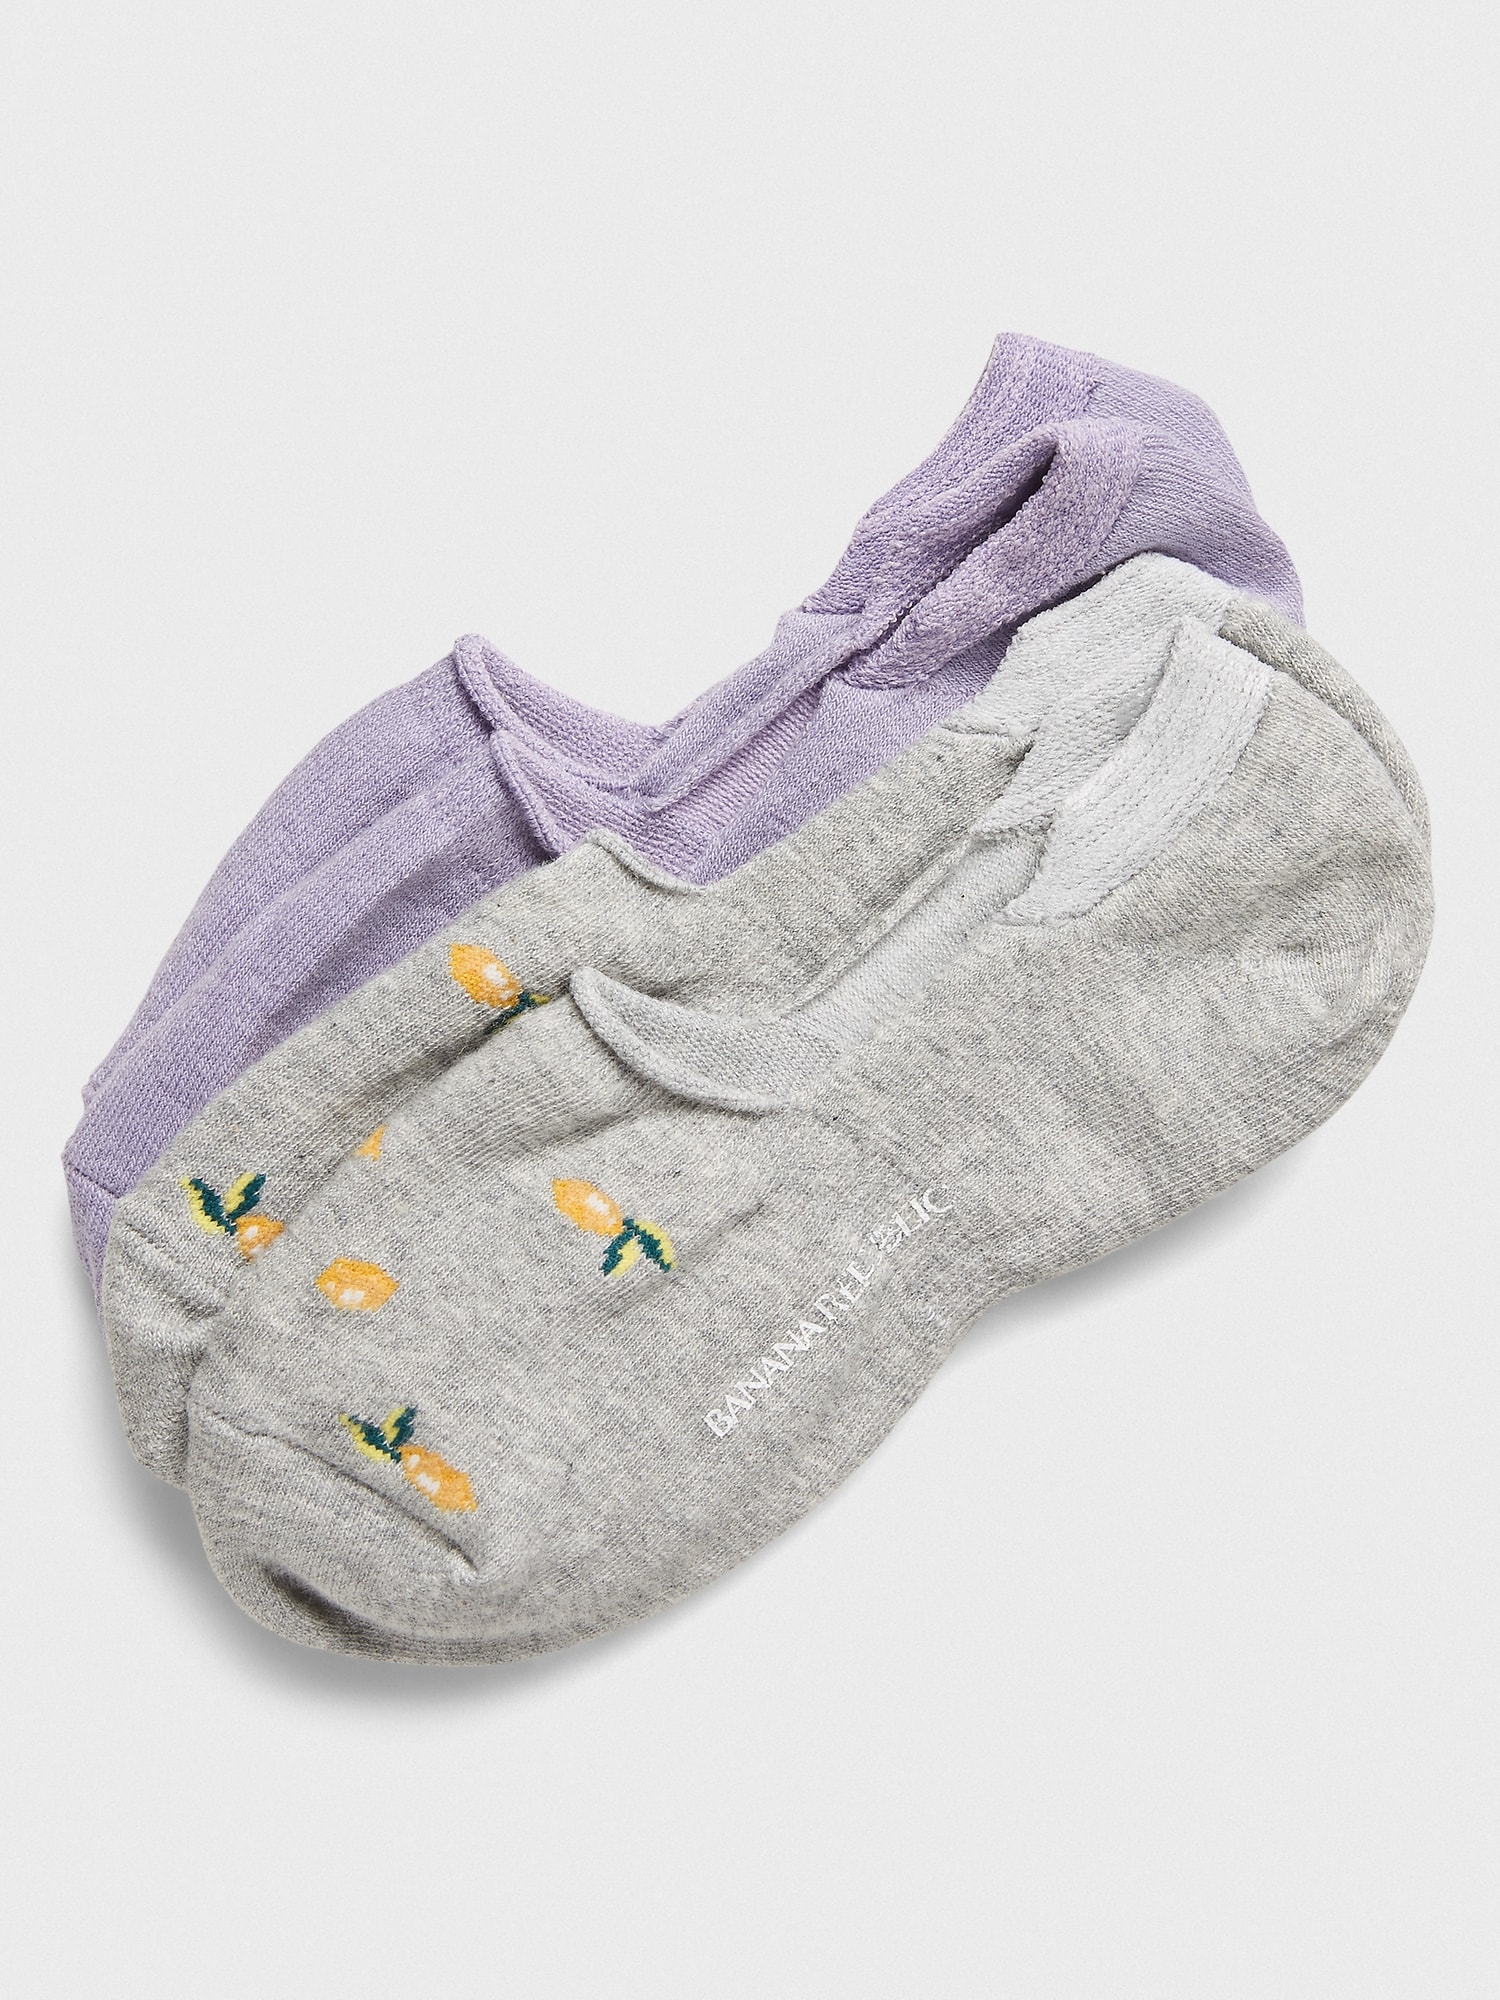 lemon baby socks